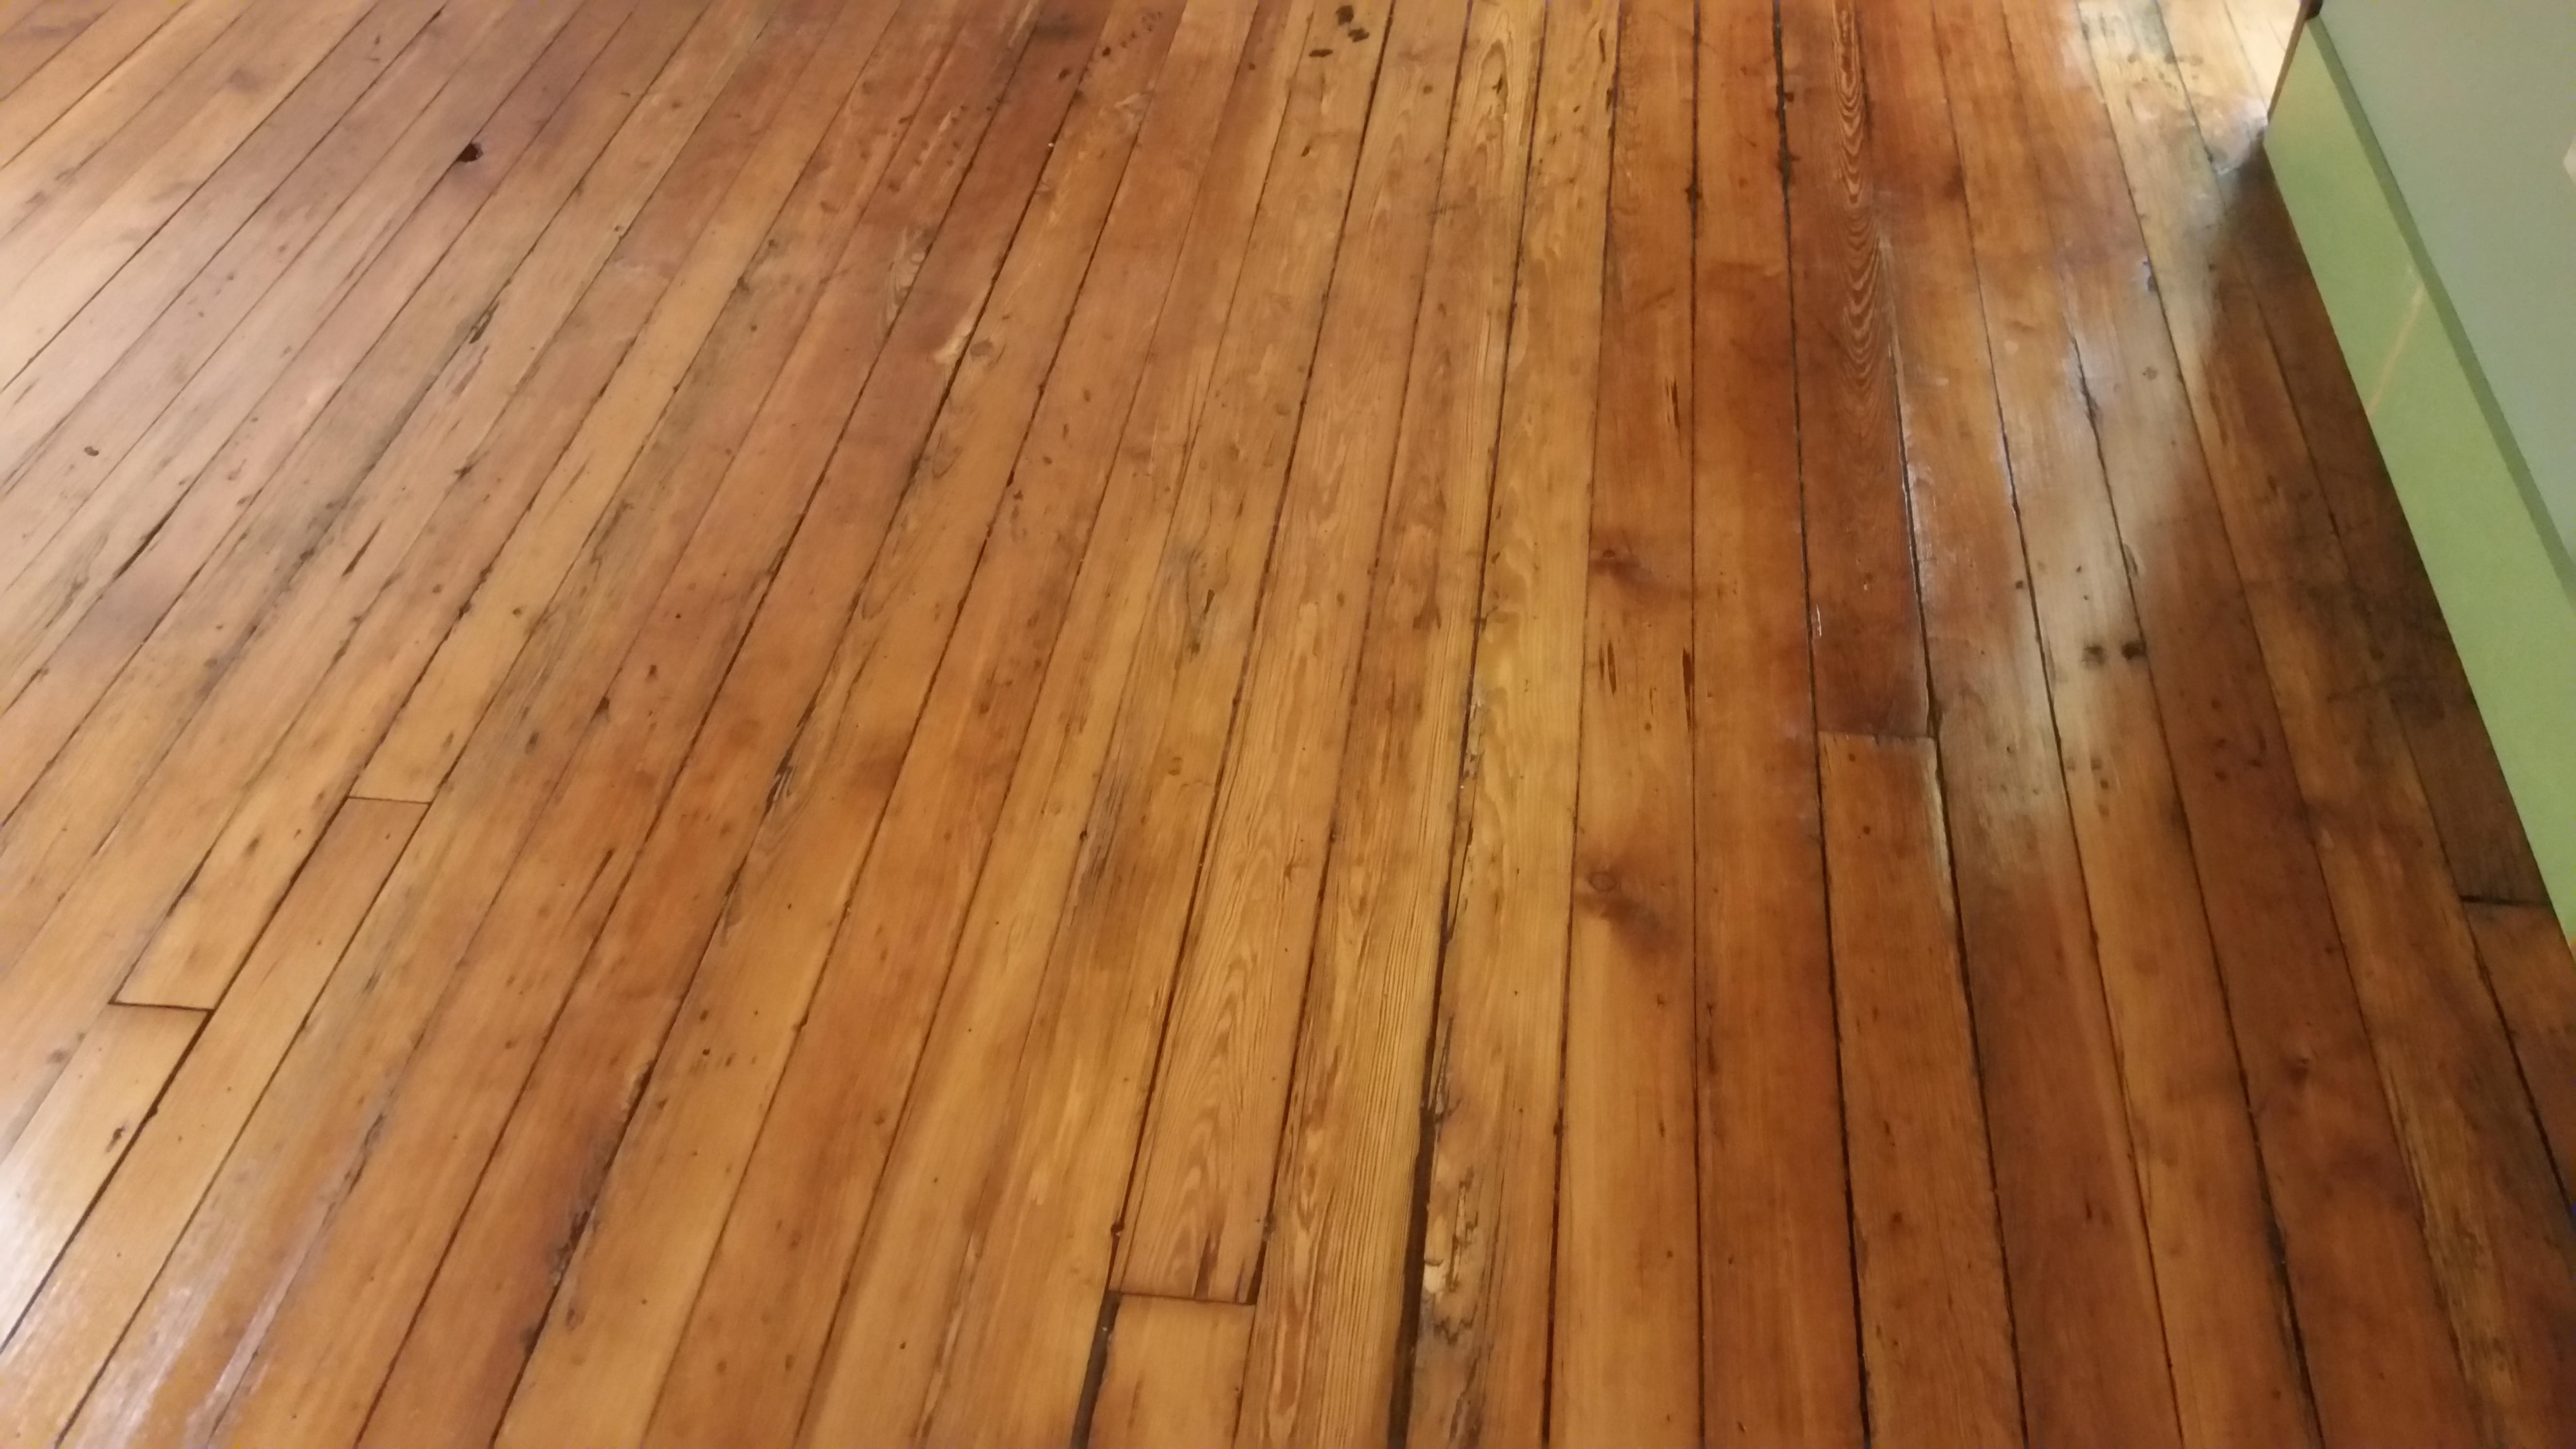 17 Spectacular Hardwood Floor Specialist Near Me 2022 free download hardwood floor specialist near me of rochester hardwood floors of utica home in 20150626 143515